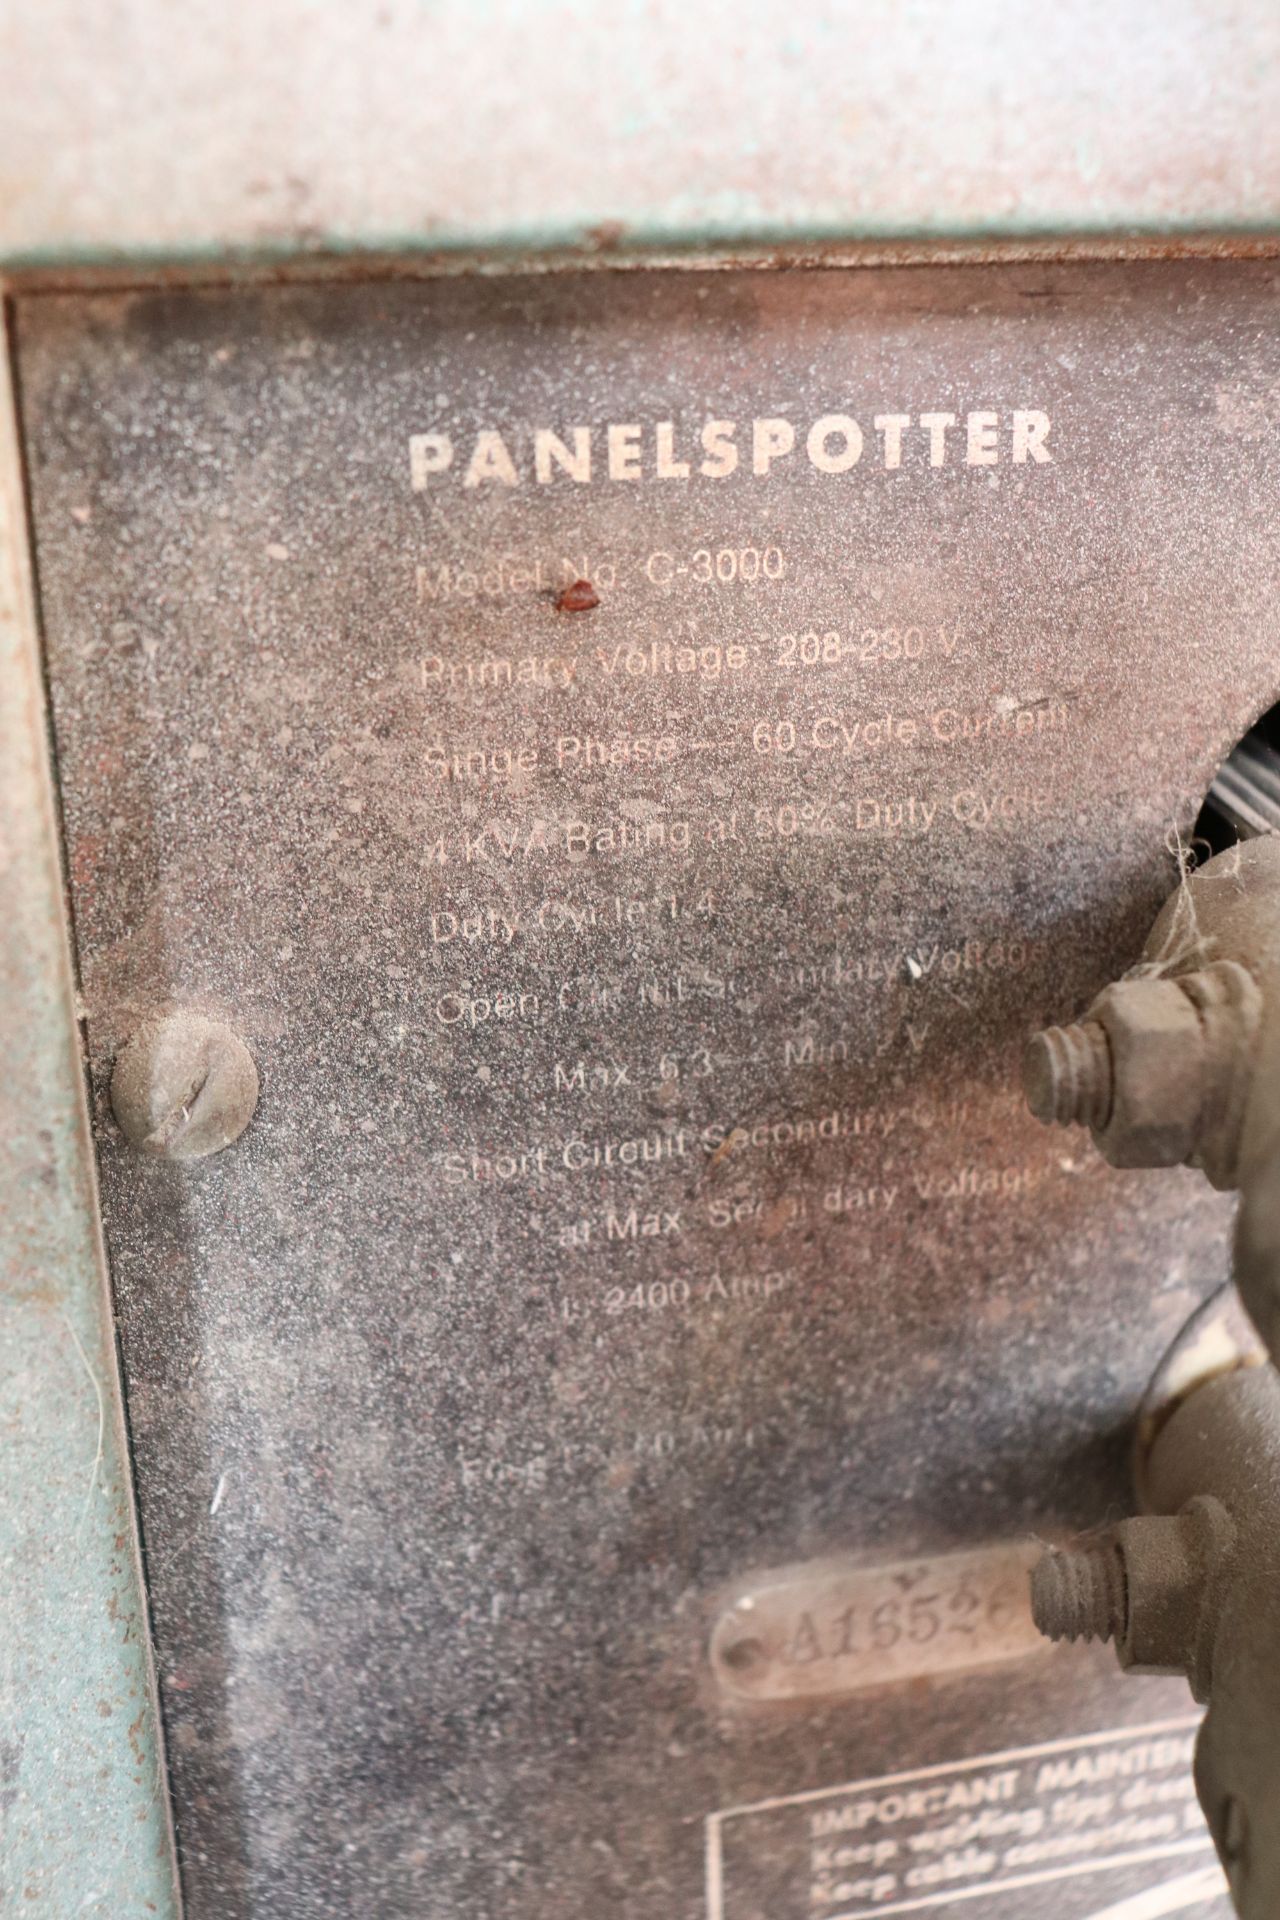 Panel spotter portable spot welder - Image 2 of 2